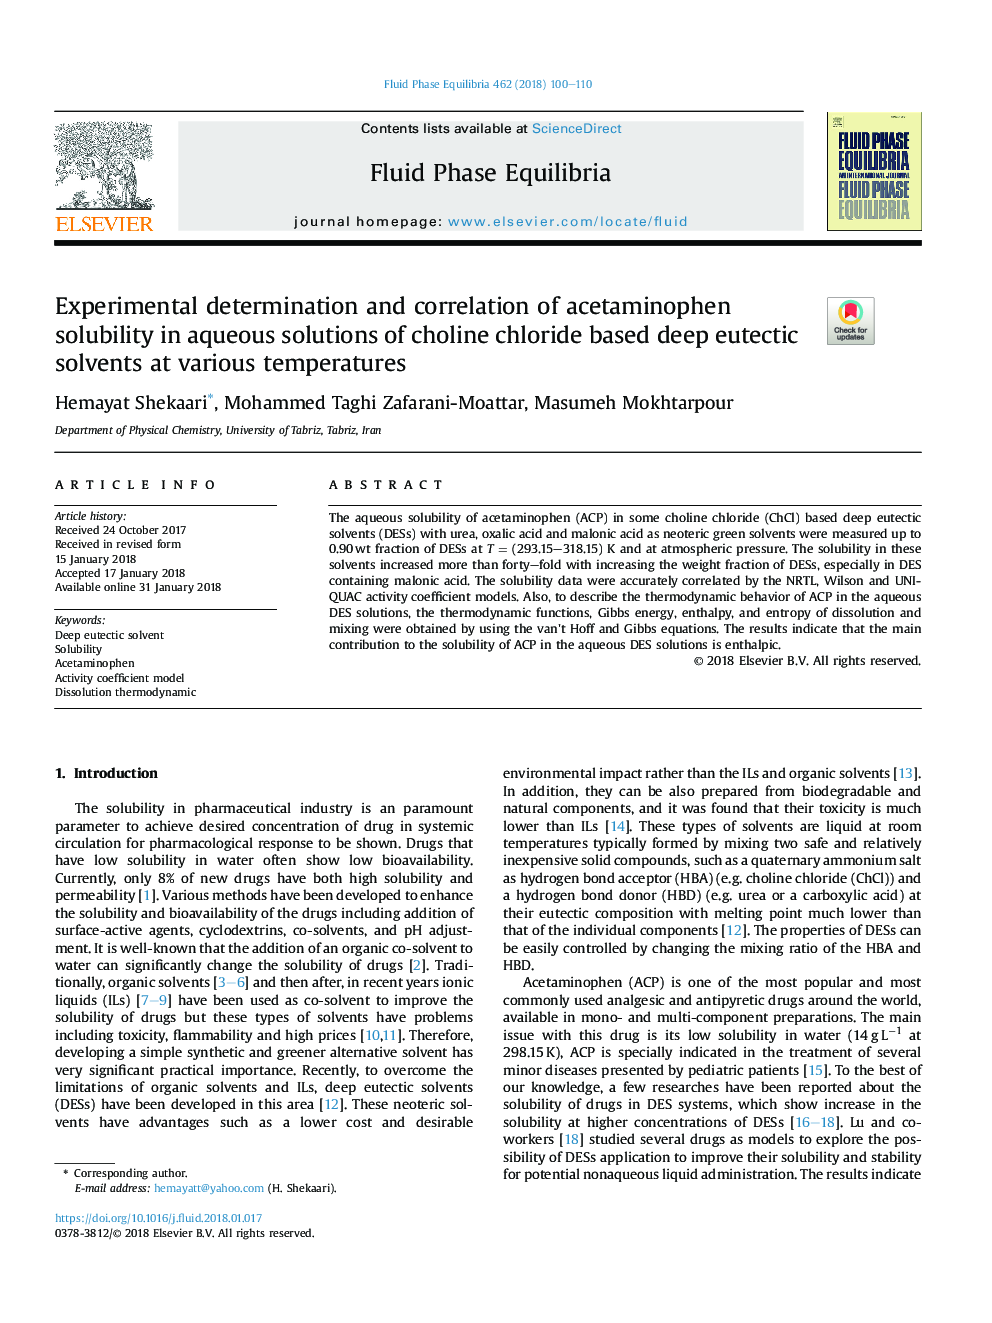 تعیین تجربی و همبستگی حلالیت استامینوفن در محلول های آبی حلال های ائوتستیک عمیق بر اساس کولین کلرید در دماهای مختلف 